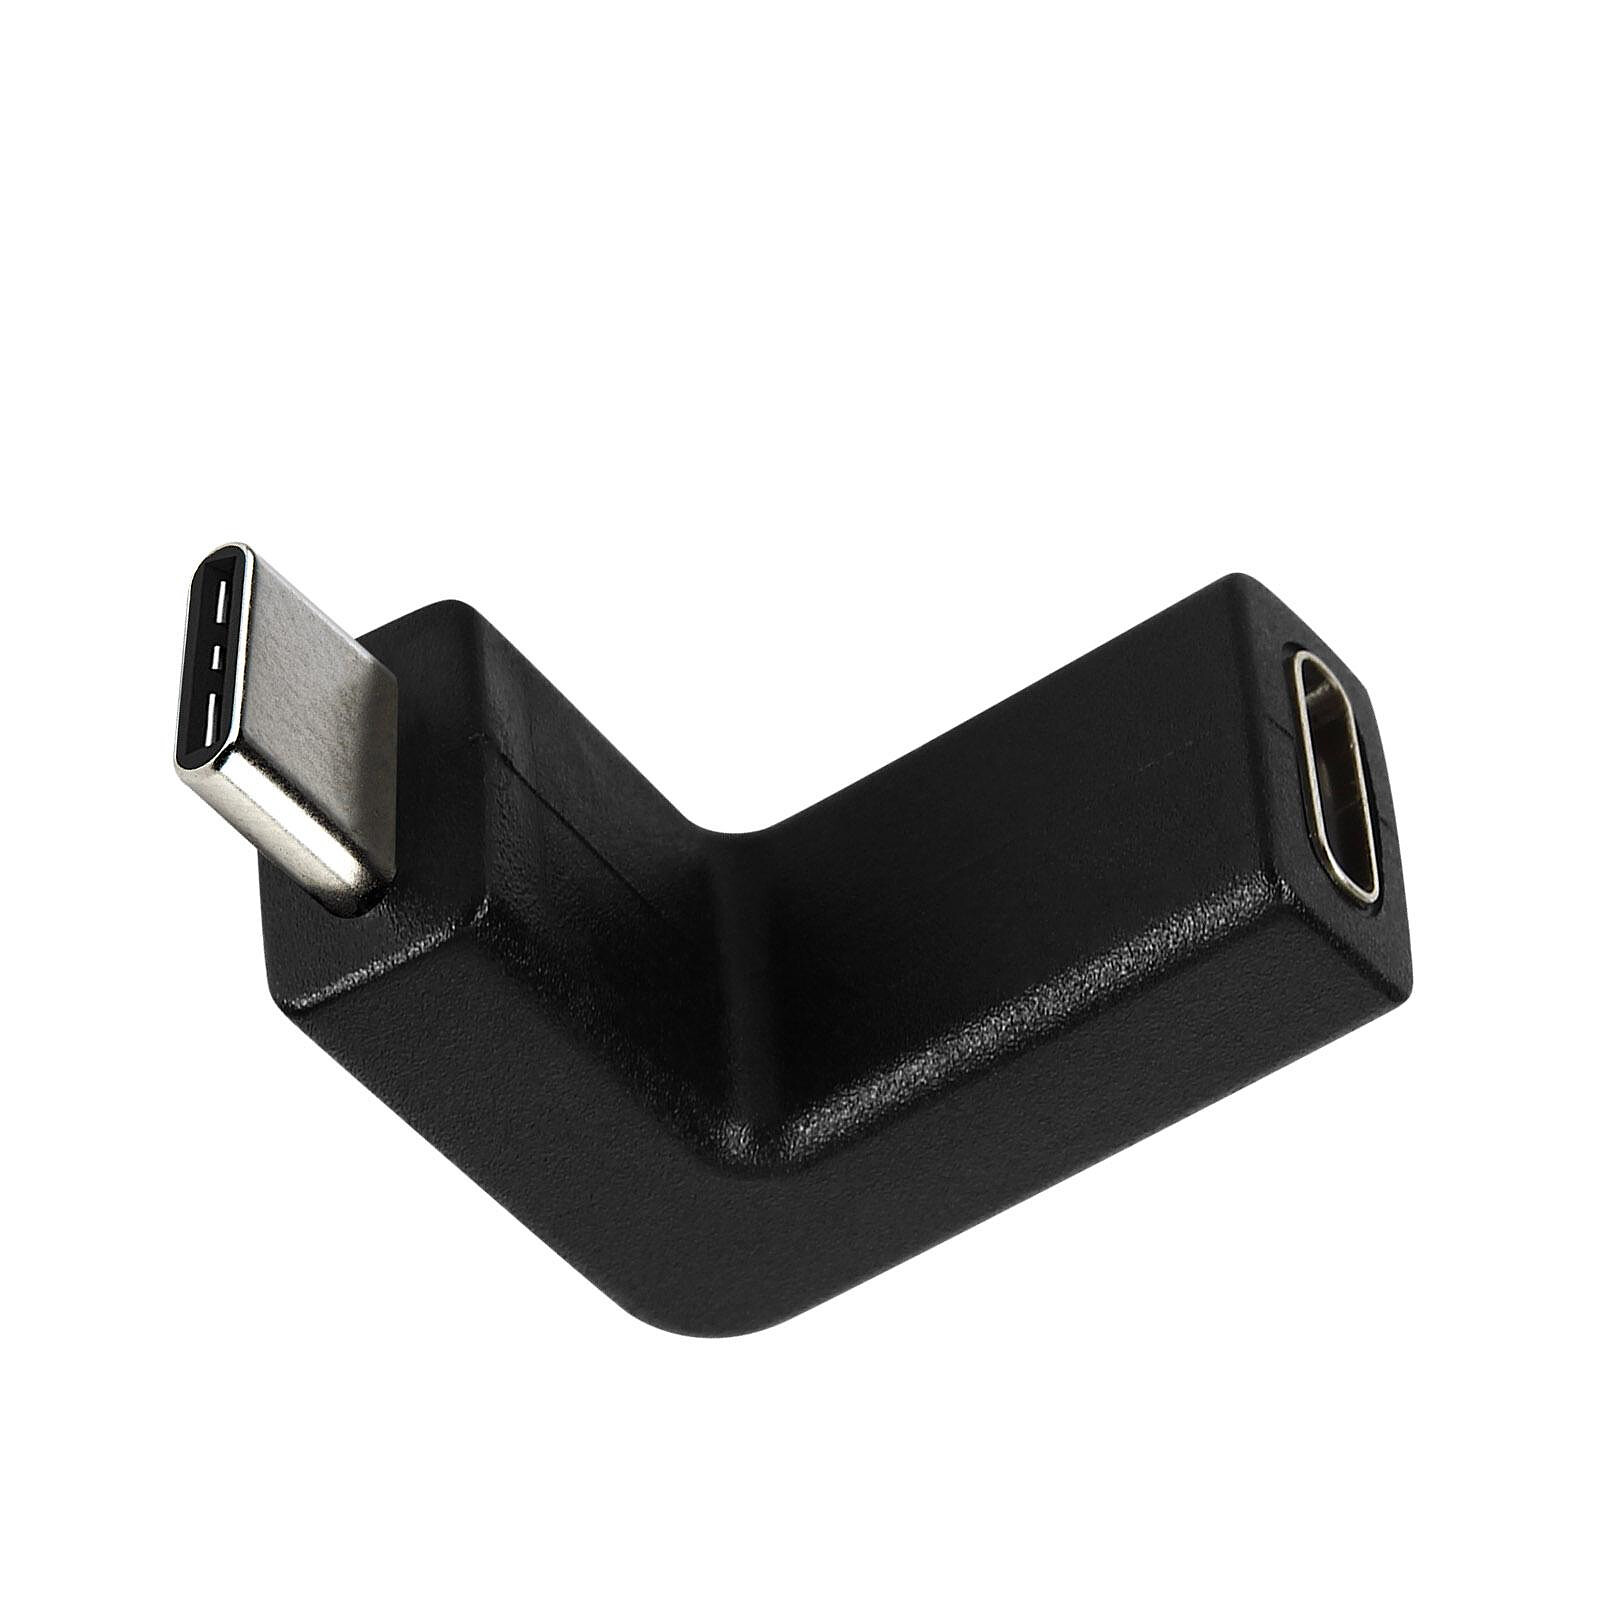 Adaptateur USB mâle – USB-C femelle